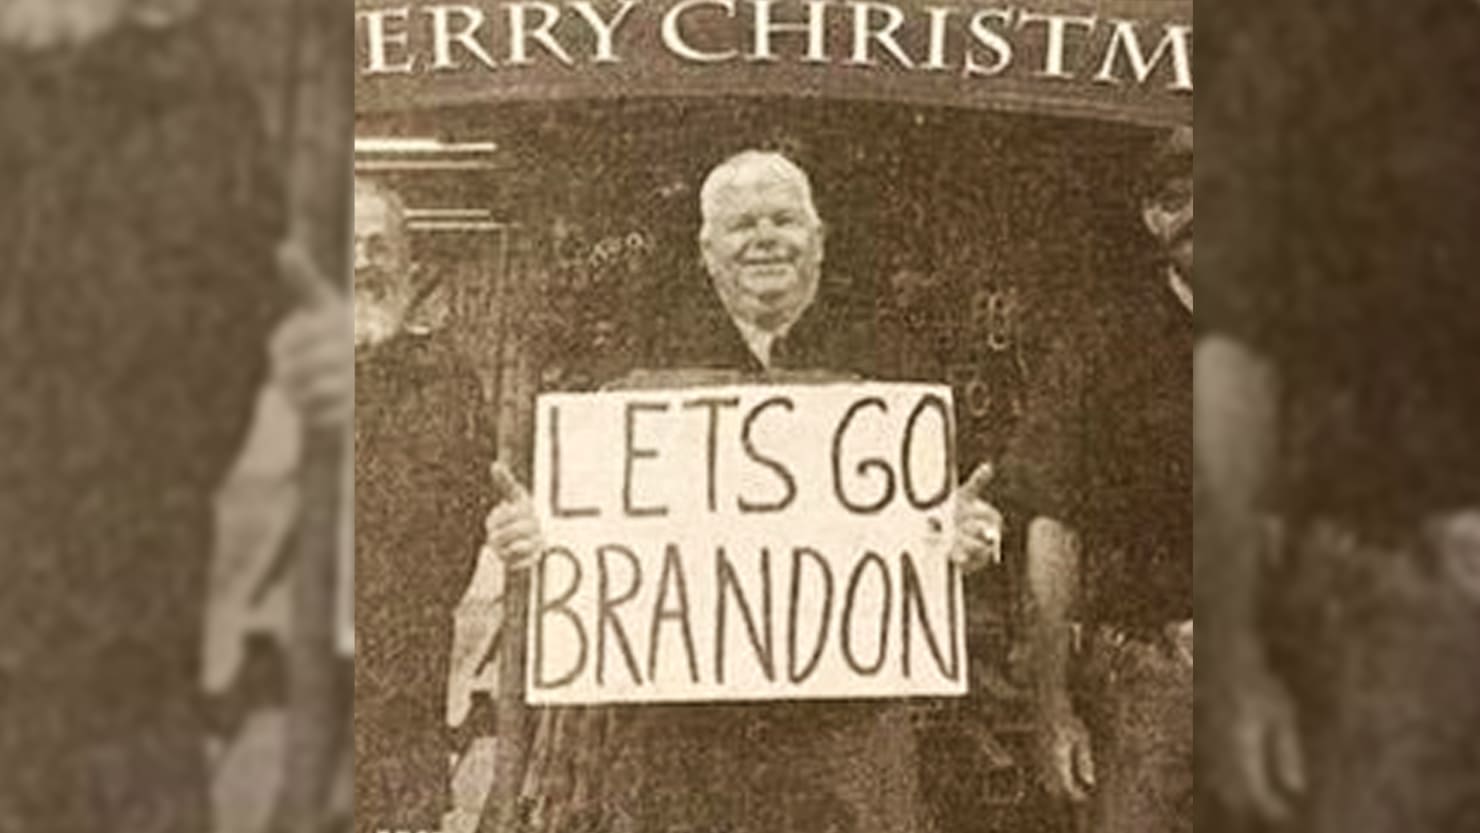 South Dakota Paper publica el anuncio navideño ‘Let’s Go Brandon’